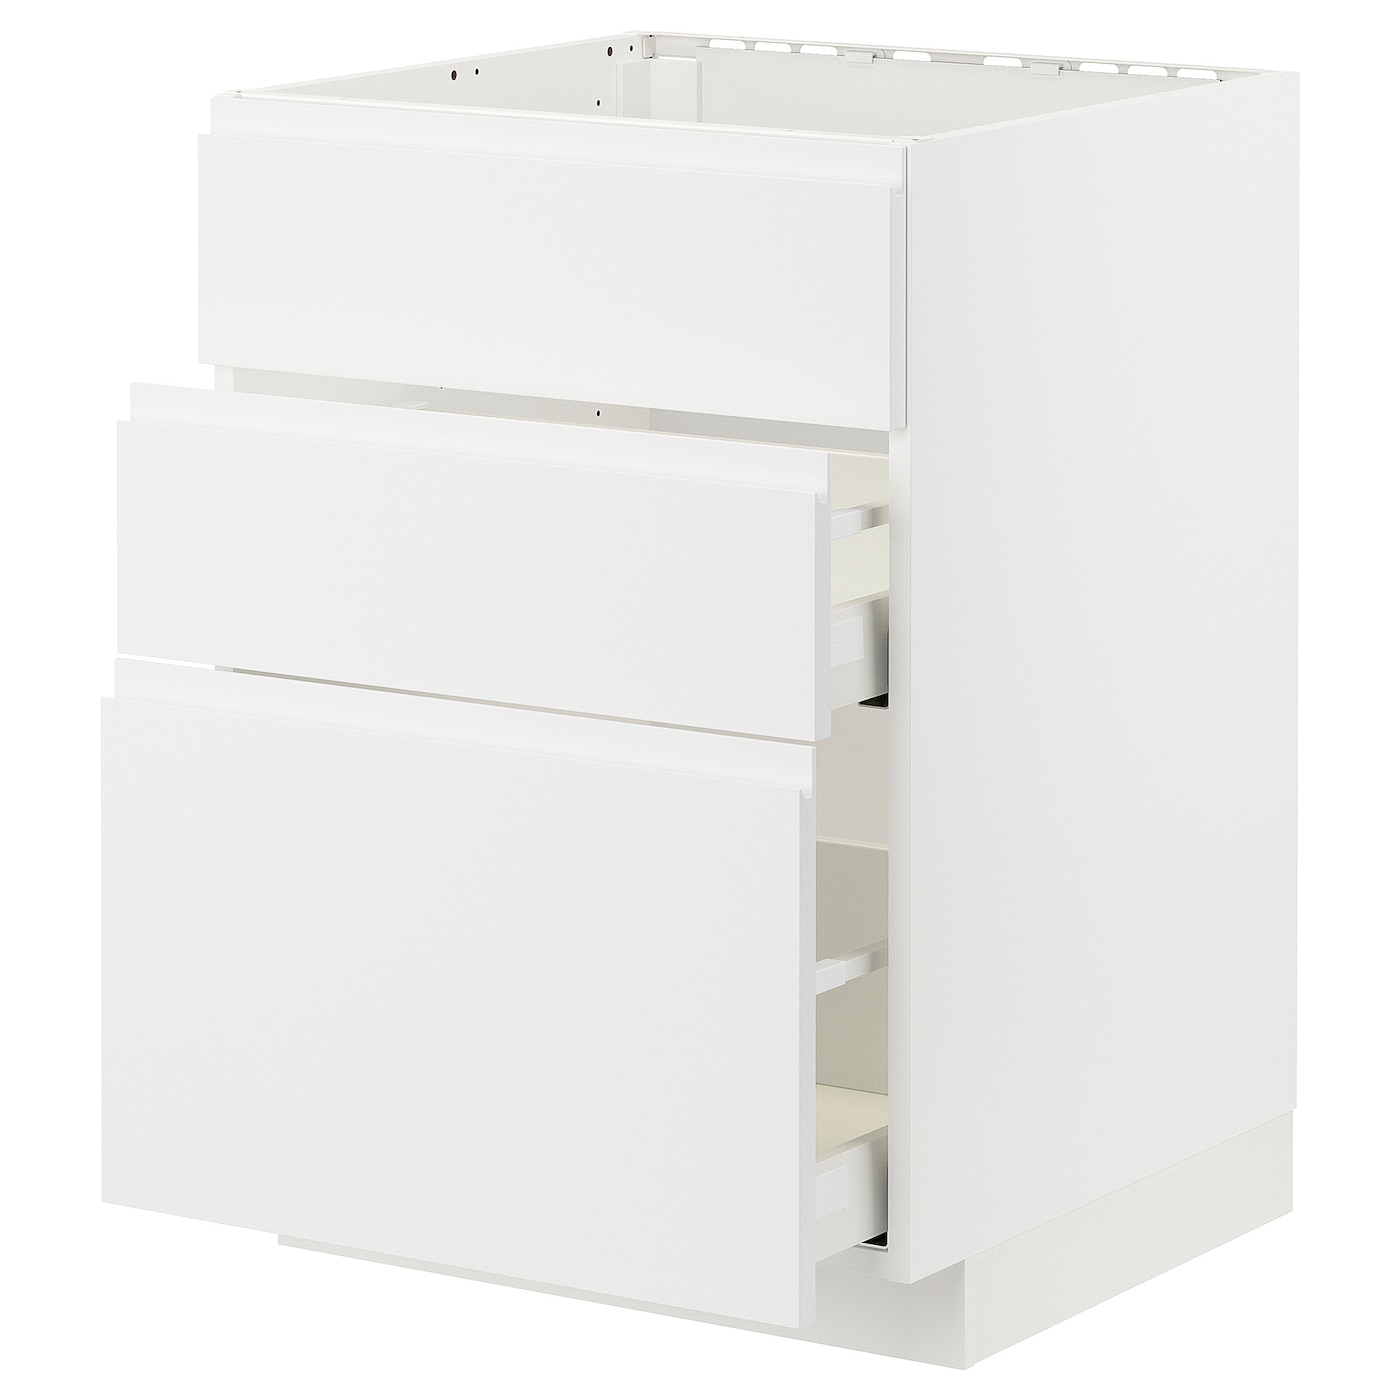 Напольный шкаф - IKEA METOD MAXIMERA, 80x62x60см, белый, МЕТОД МАКСИМЕРА ИКЕА